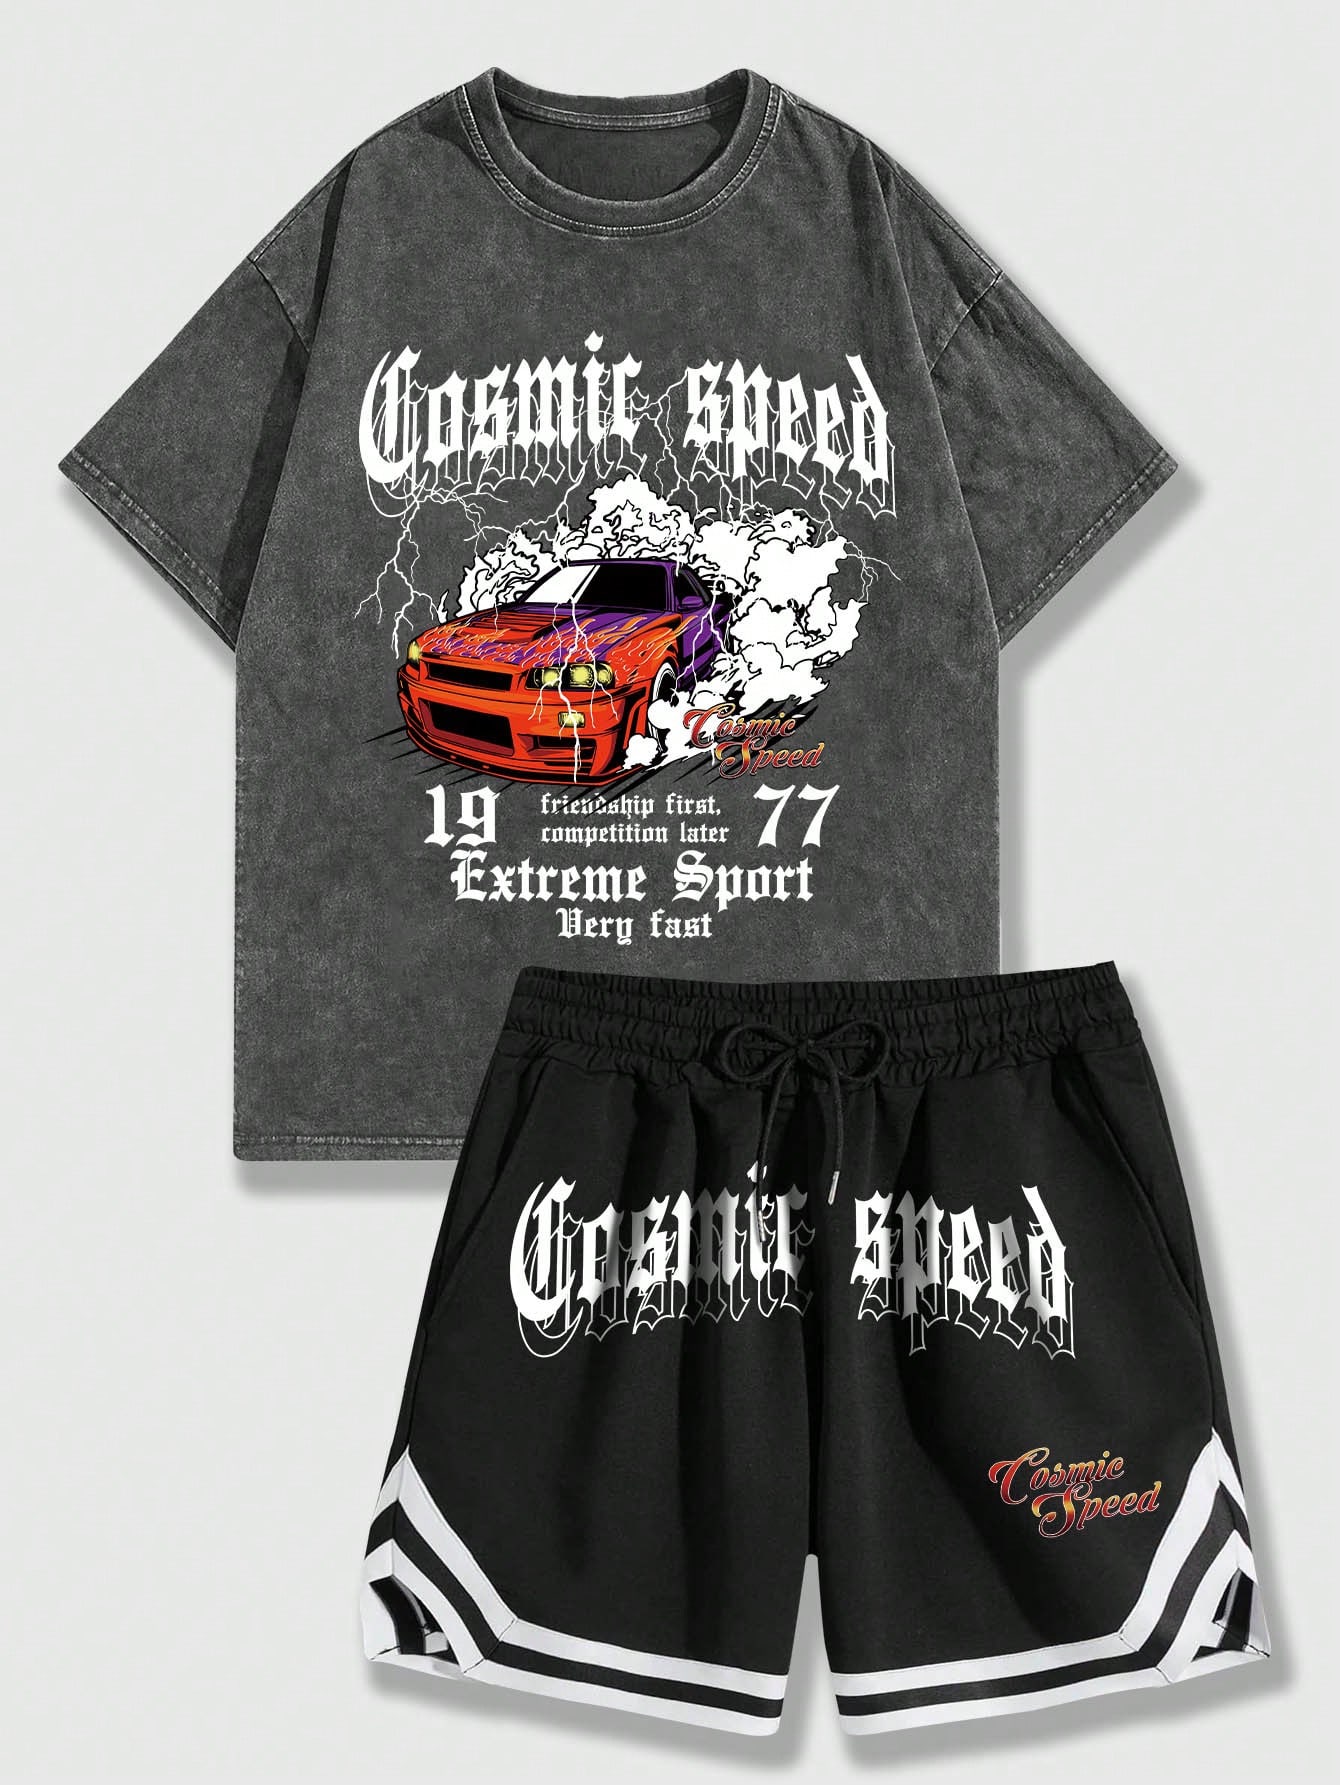 ROMWE Street Life Мужская уличная футболка с принтом автомобилей и букв и дышащие спортивные шорты, черный